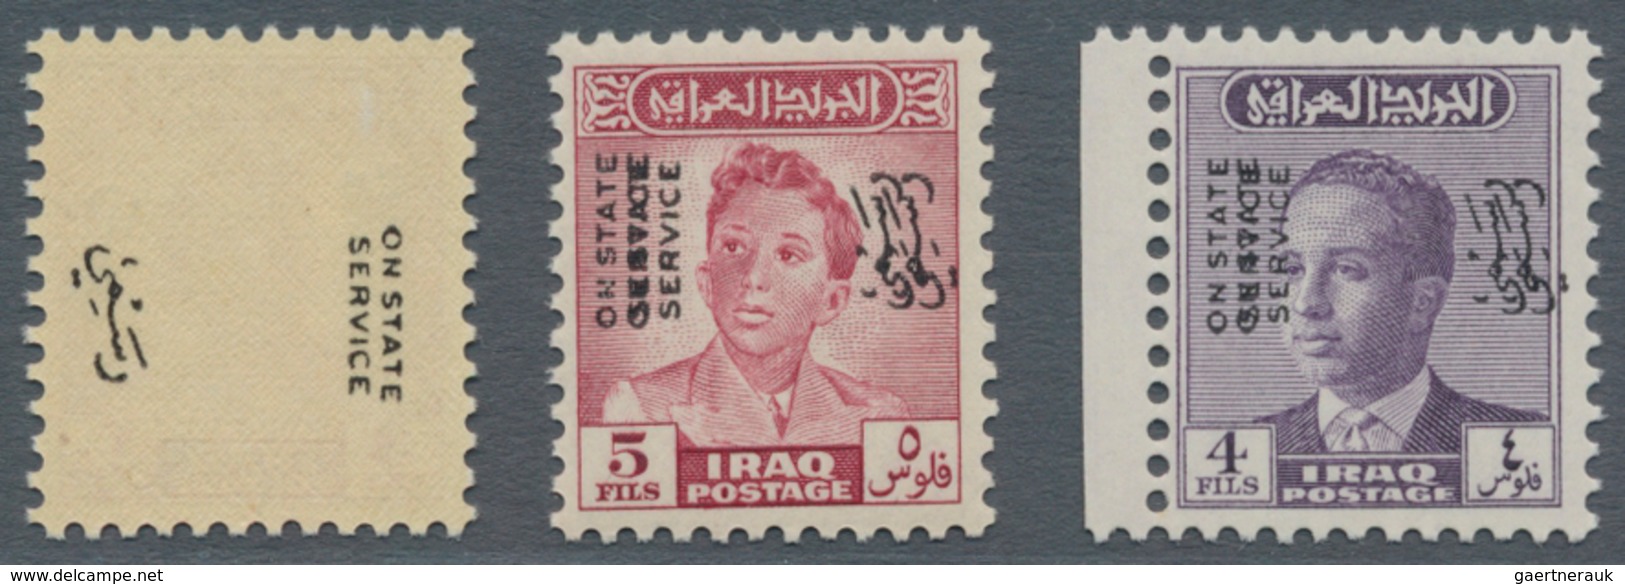 Irak: 1948-60 OVERPRINT VARIETIES: Seven Stamps Showing Various Varieties Of Their Overprint, With 1 - Iraq